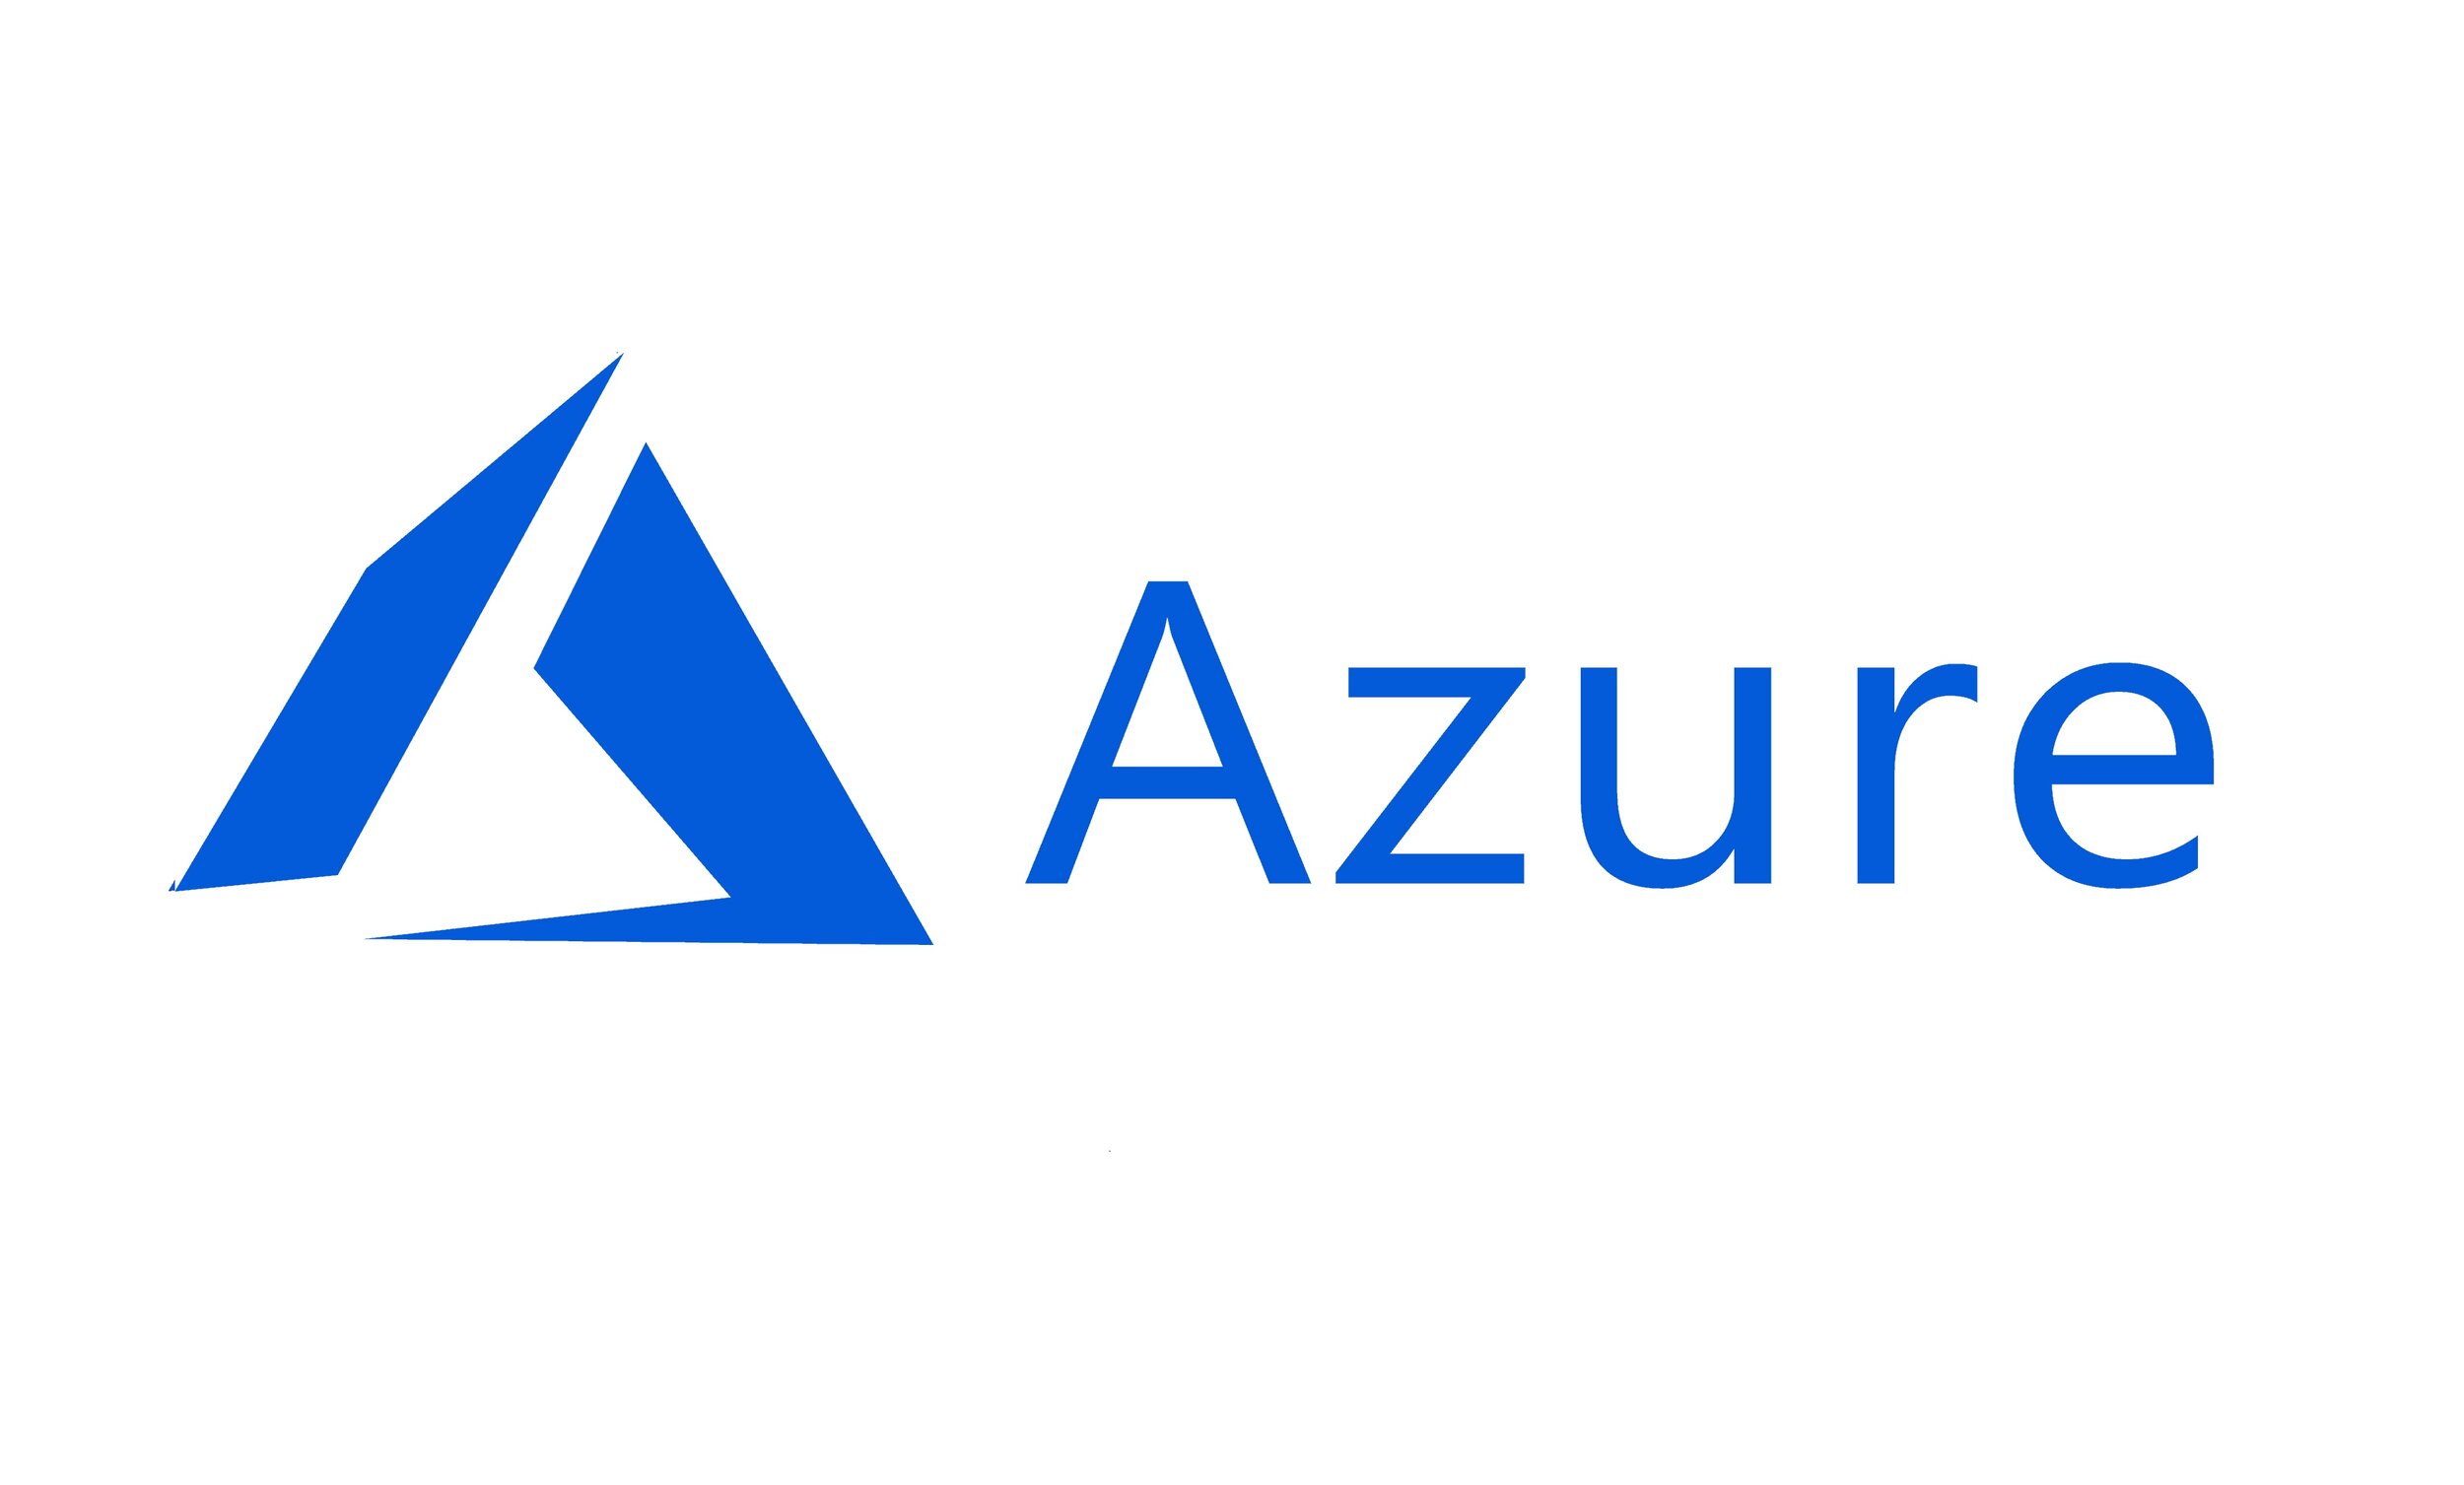 Azure Slide.jpg